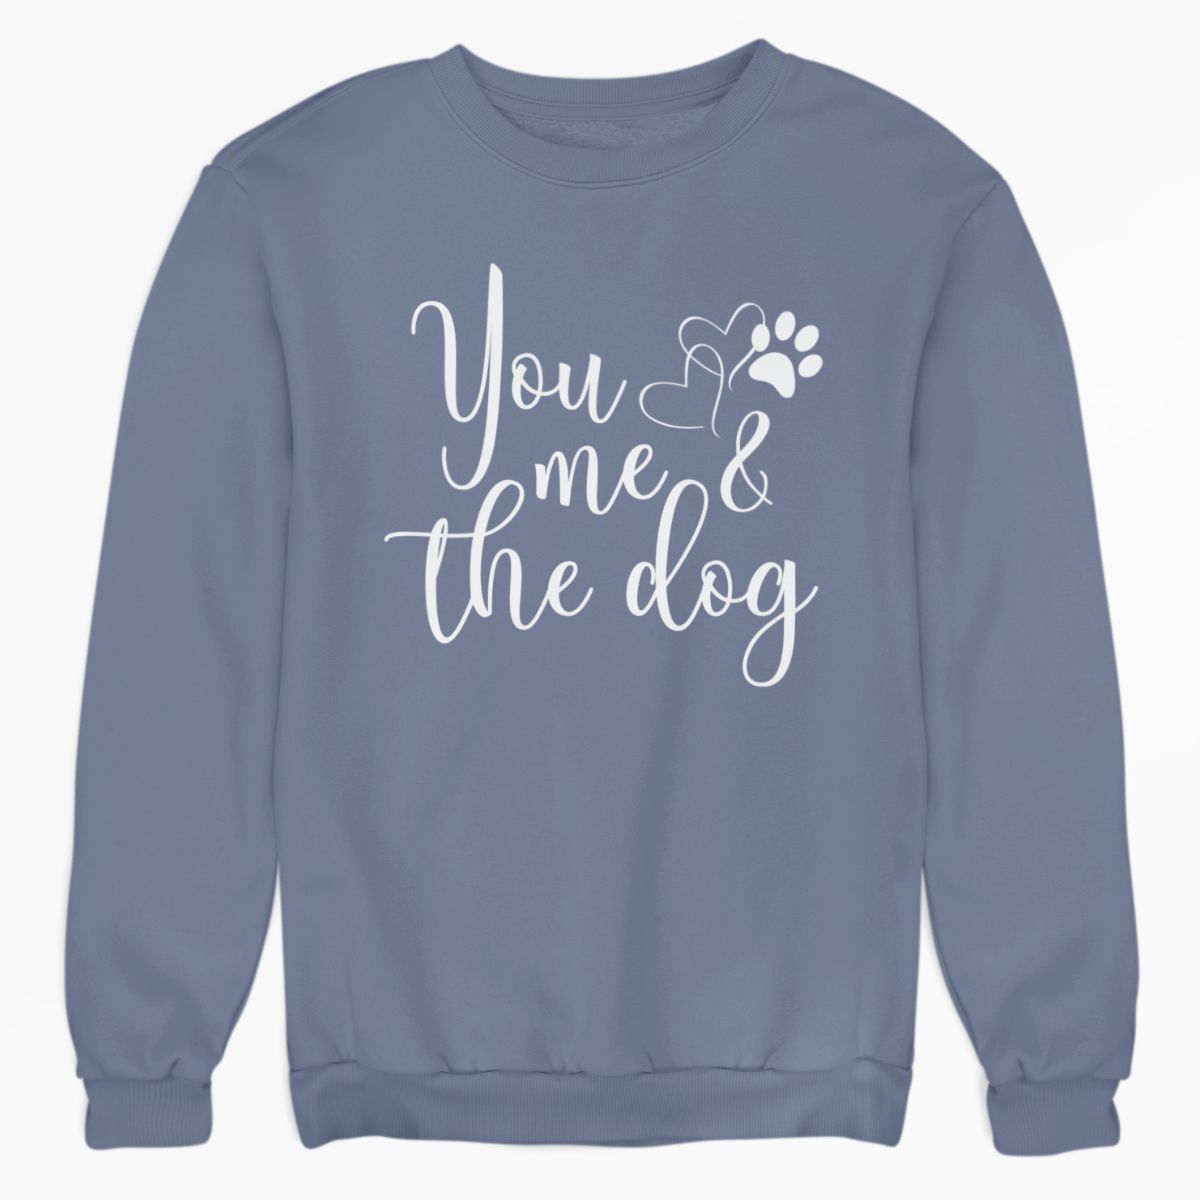 You Me & the Dog Shirt